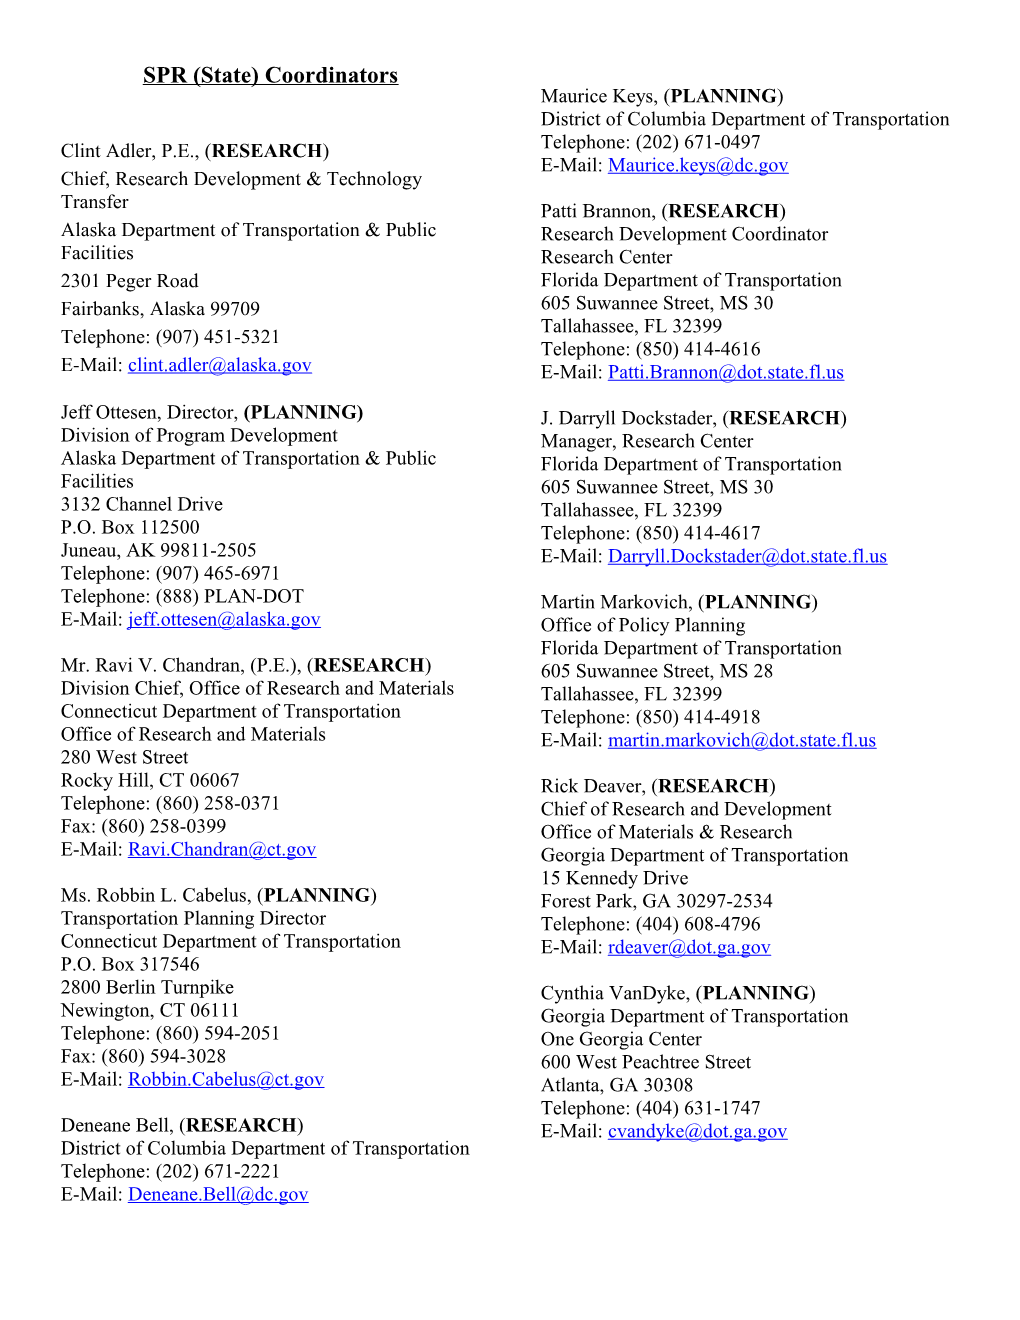 List of SPR Coordinators (Updated 7/5/11)